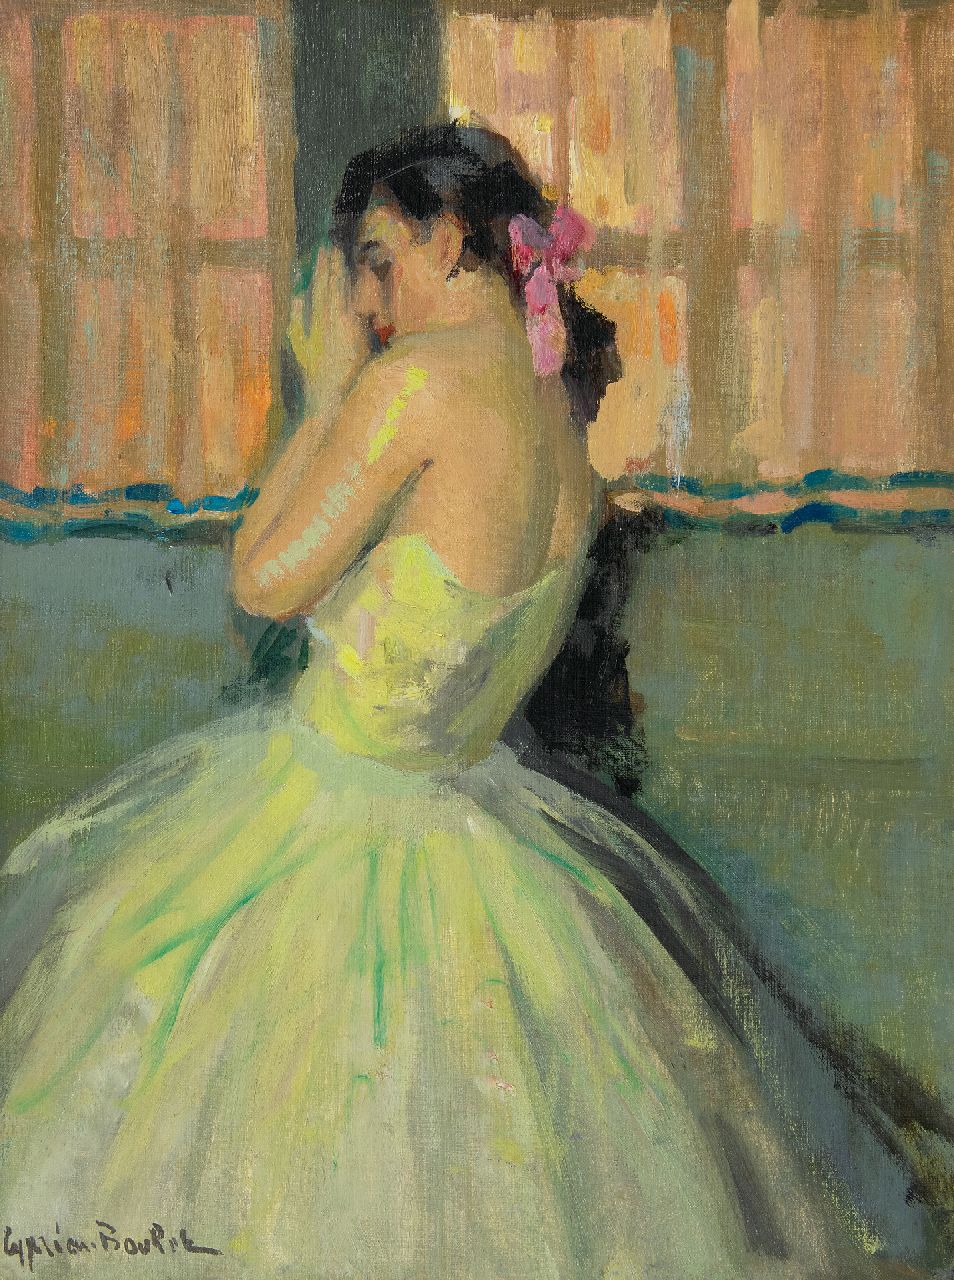 Boulet C.E.  | Cyprien Eugène Boulet | Schilderijen te koop aangeboden | Ballerina met roze haarstrik, olieverf op doek 61,1 x 46,1 cm, gesigneerd linksonder